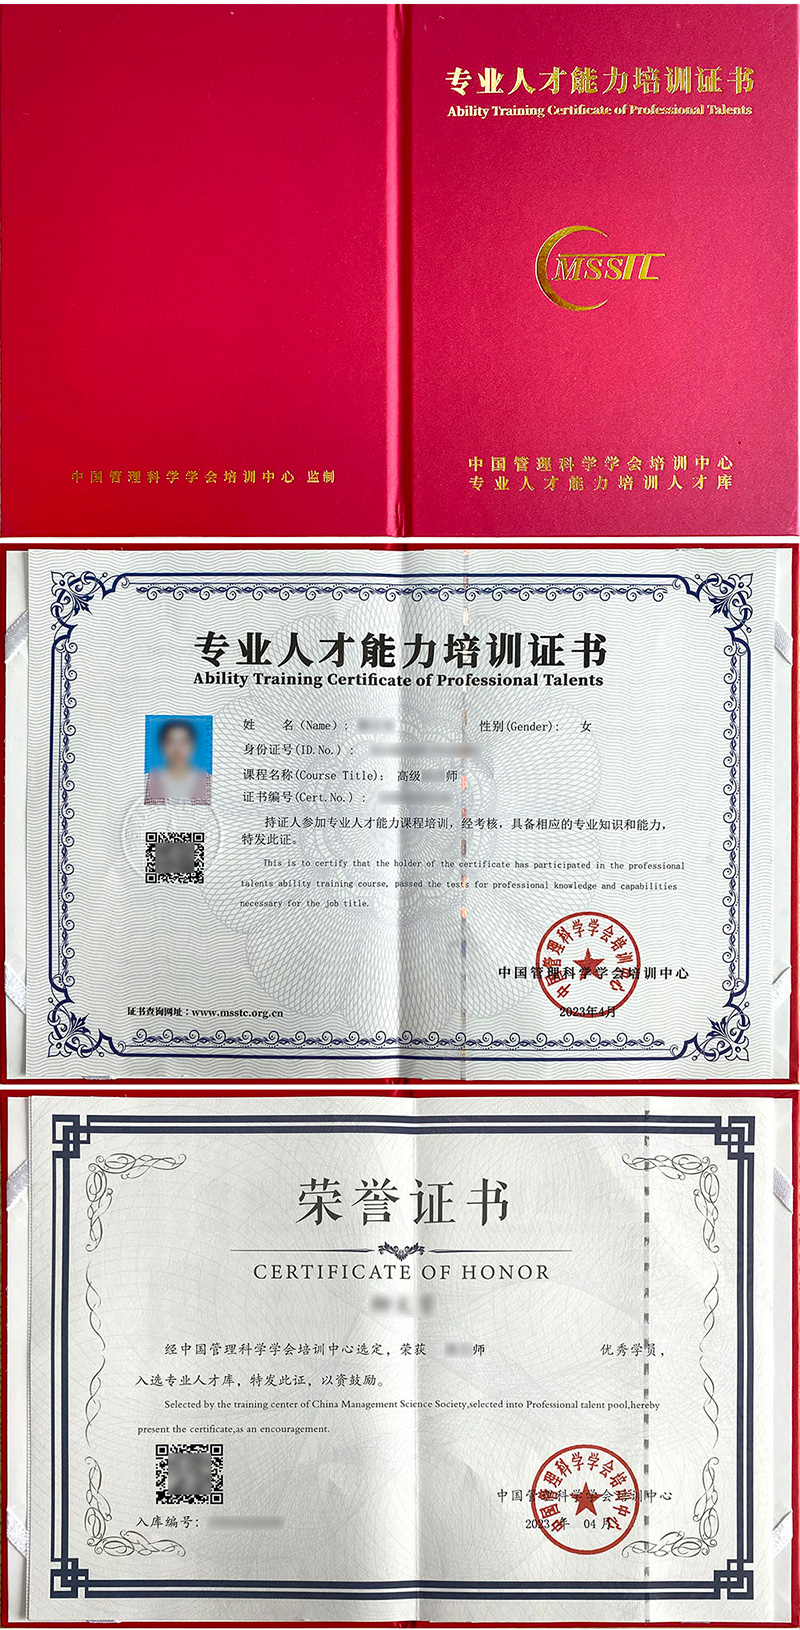 中国管理科学学会培训中心 专业人才能力培训证书 房地产评估师证书样本